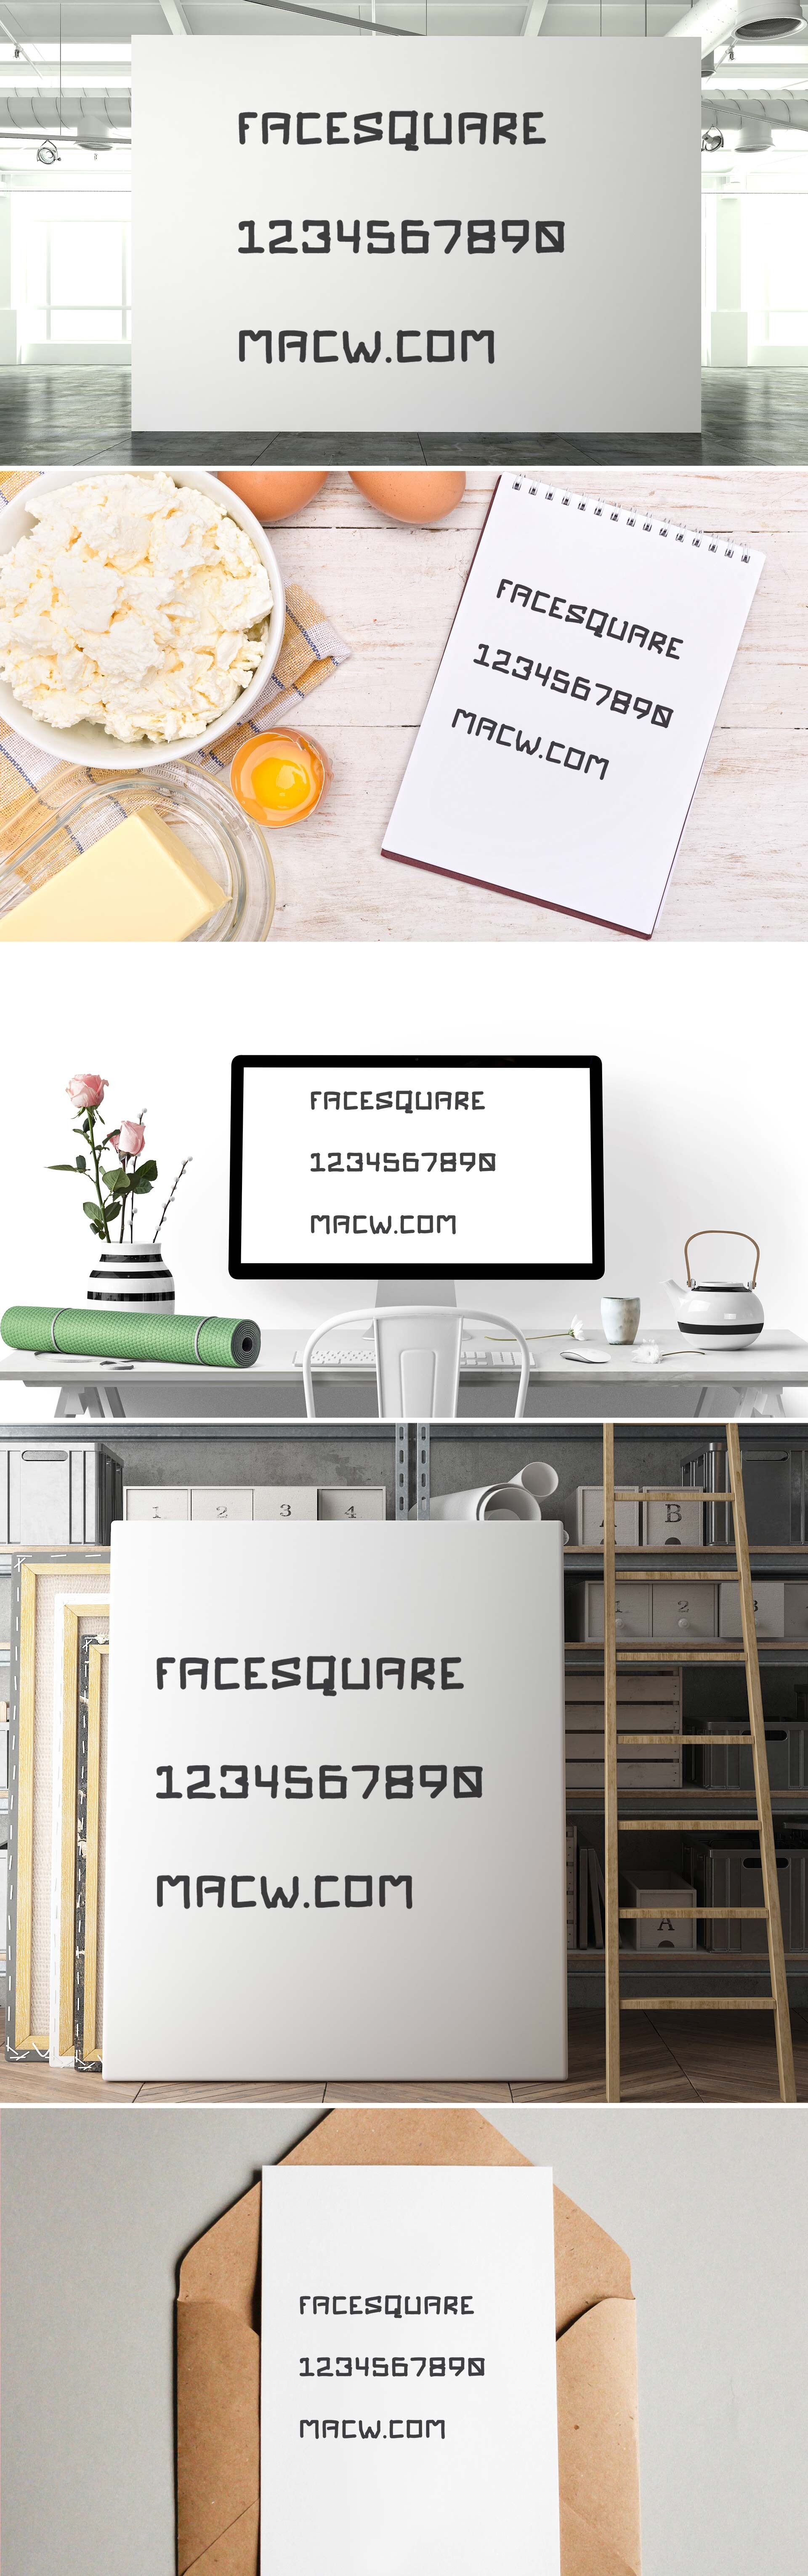 Face Square时尚显示字体